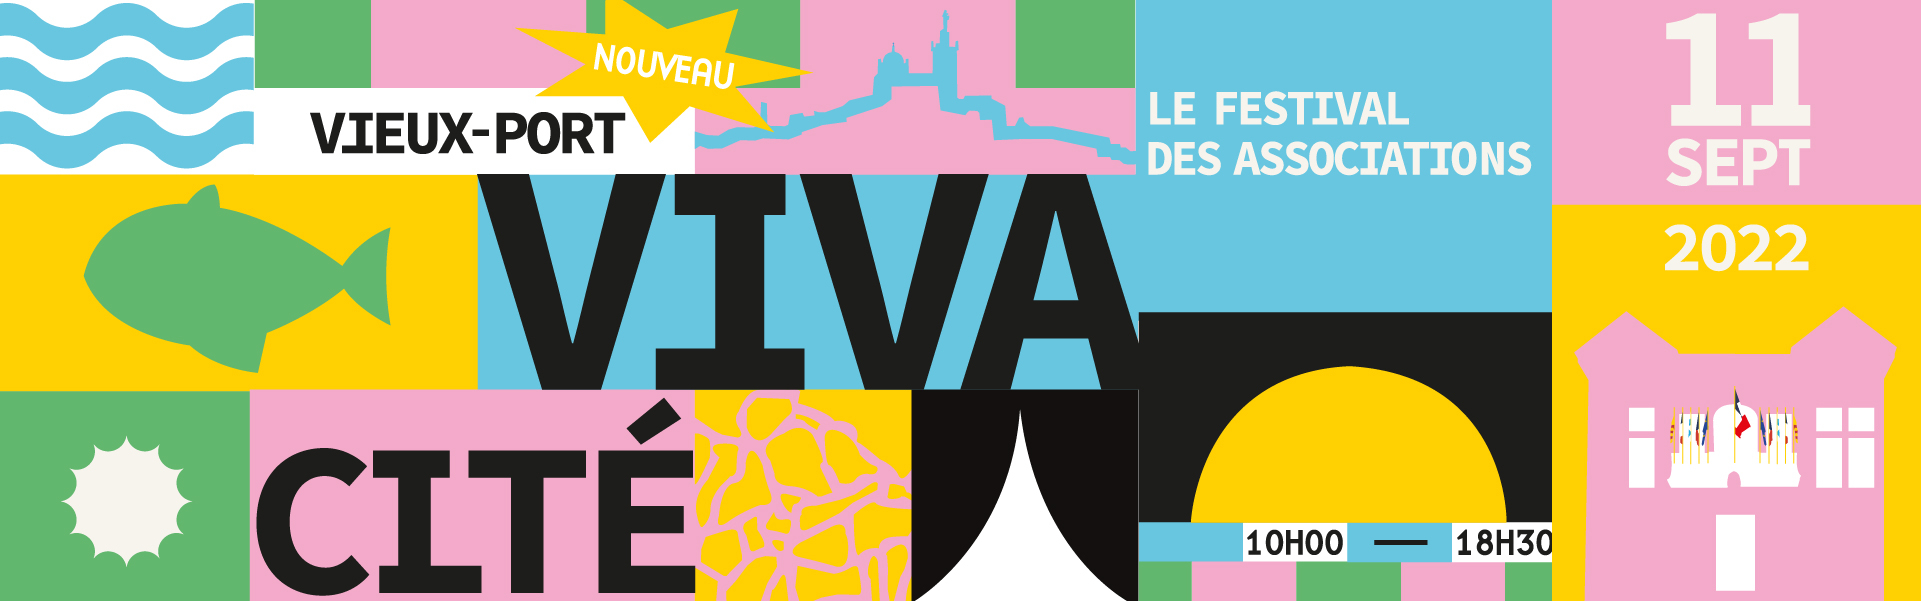 Vivacité : inscrivez-vous pour participer au festival des associations marseillaises 